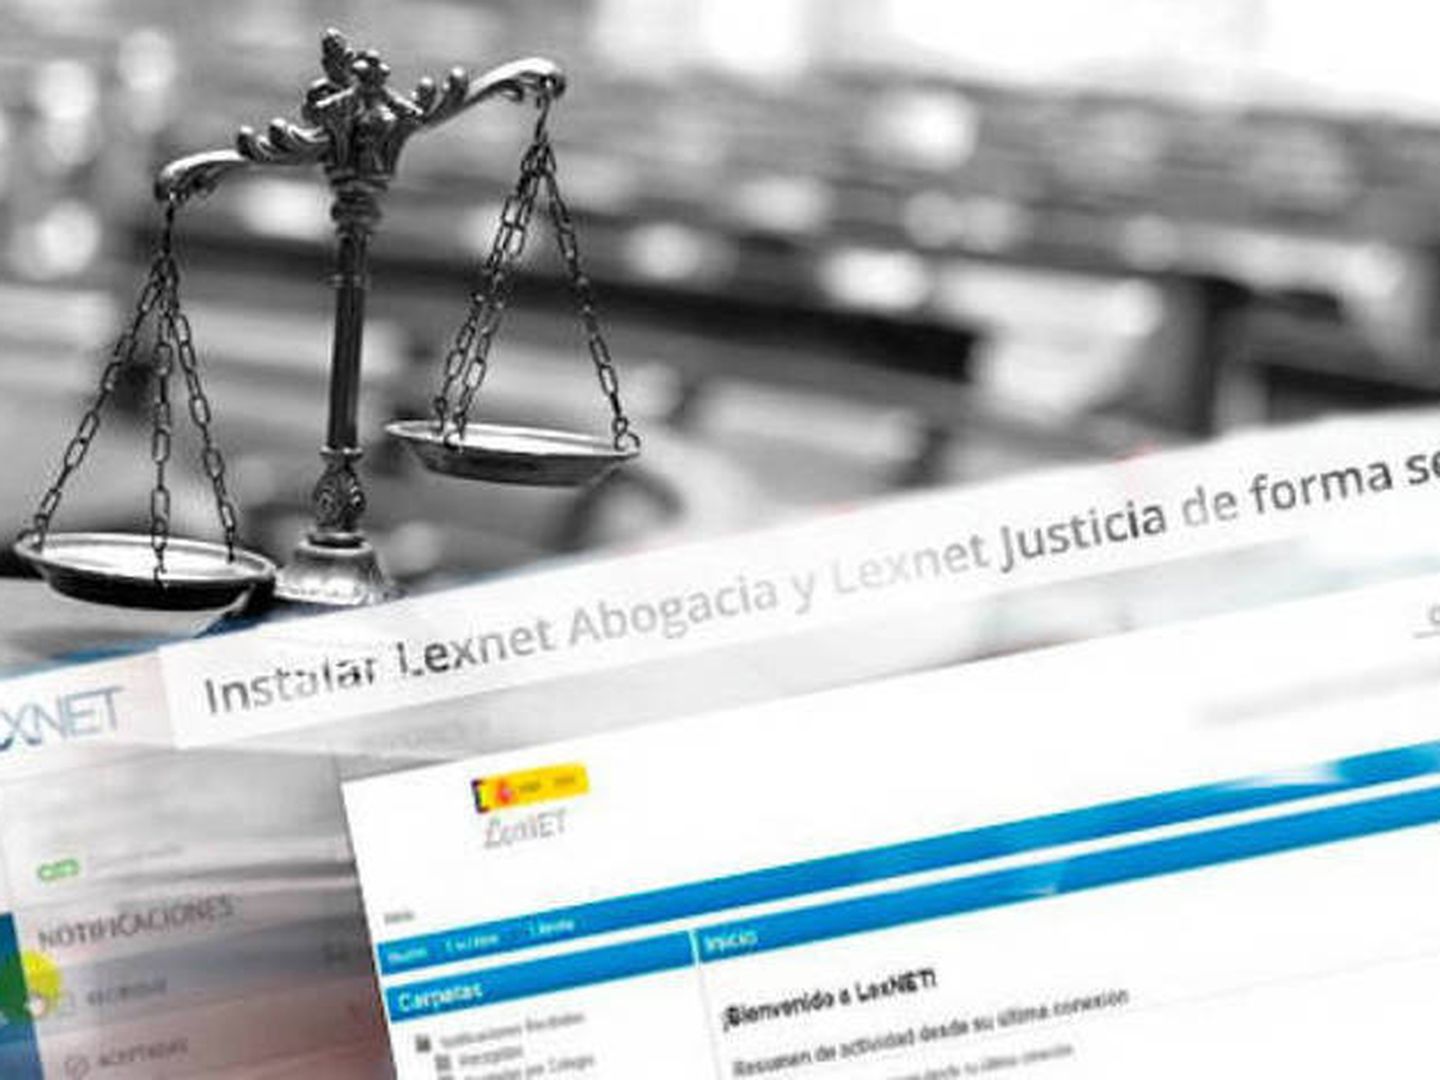 Servicio LexNet en el Ministerio de Justicia. 